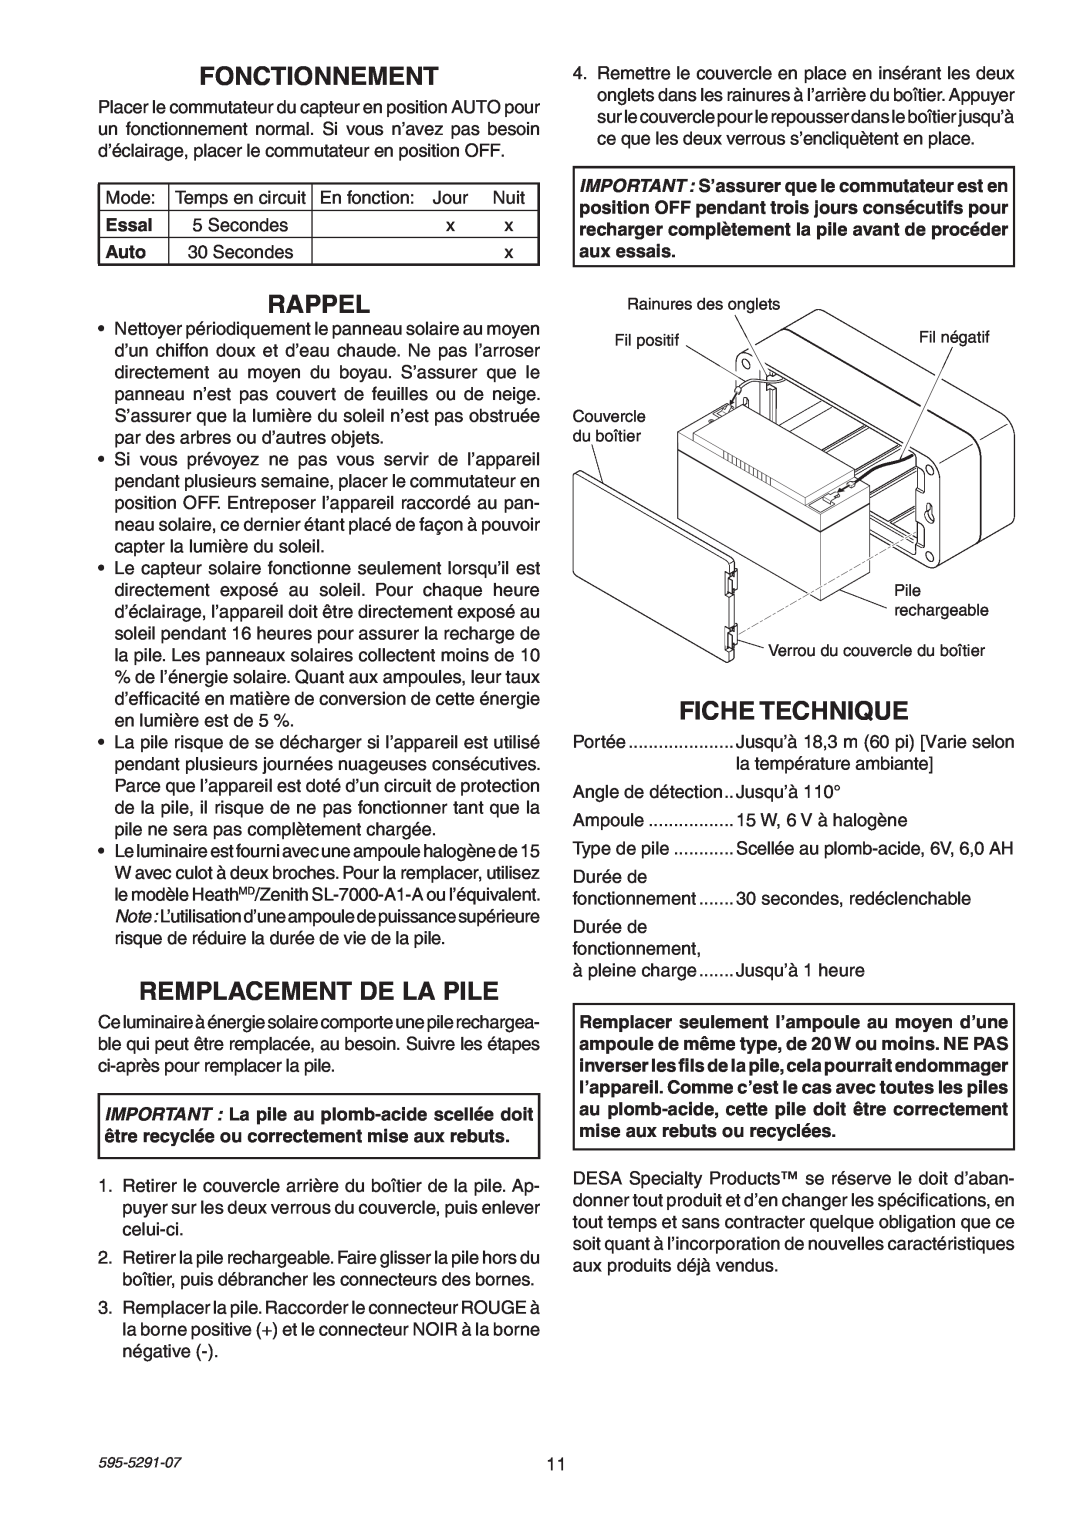 Heath Zenith SL-7001 manual Fonctionnement, Rappel, Remplacement De La Pile, Fiche Technique 